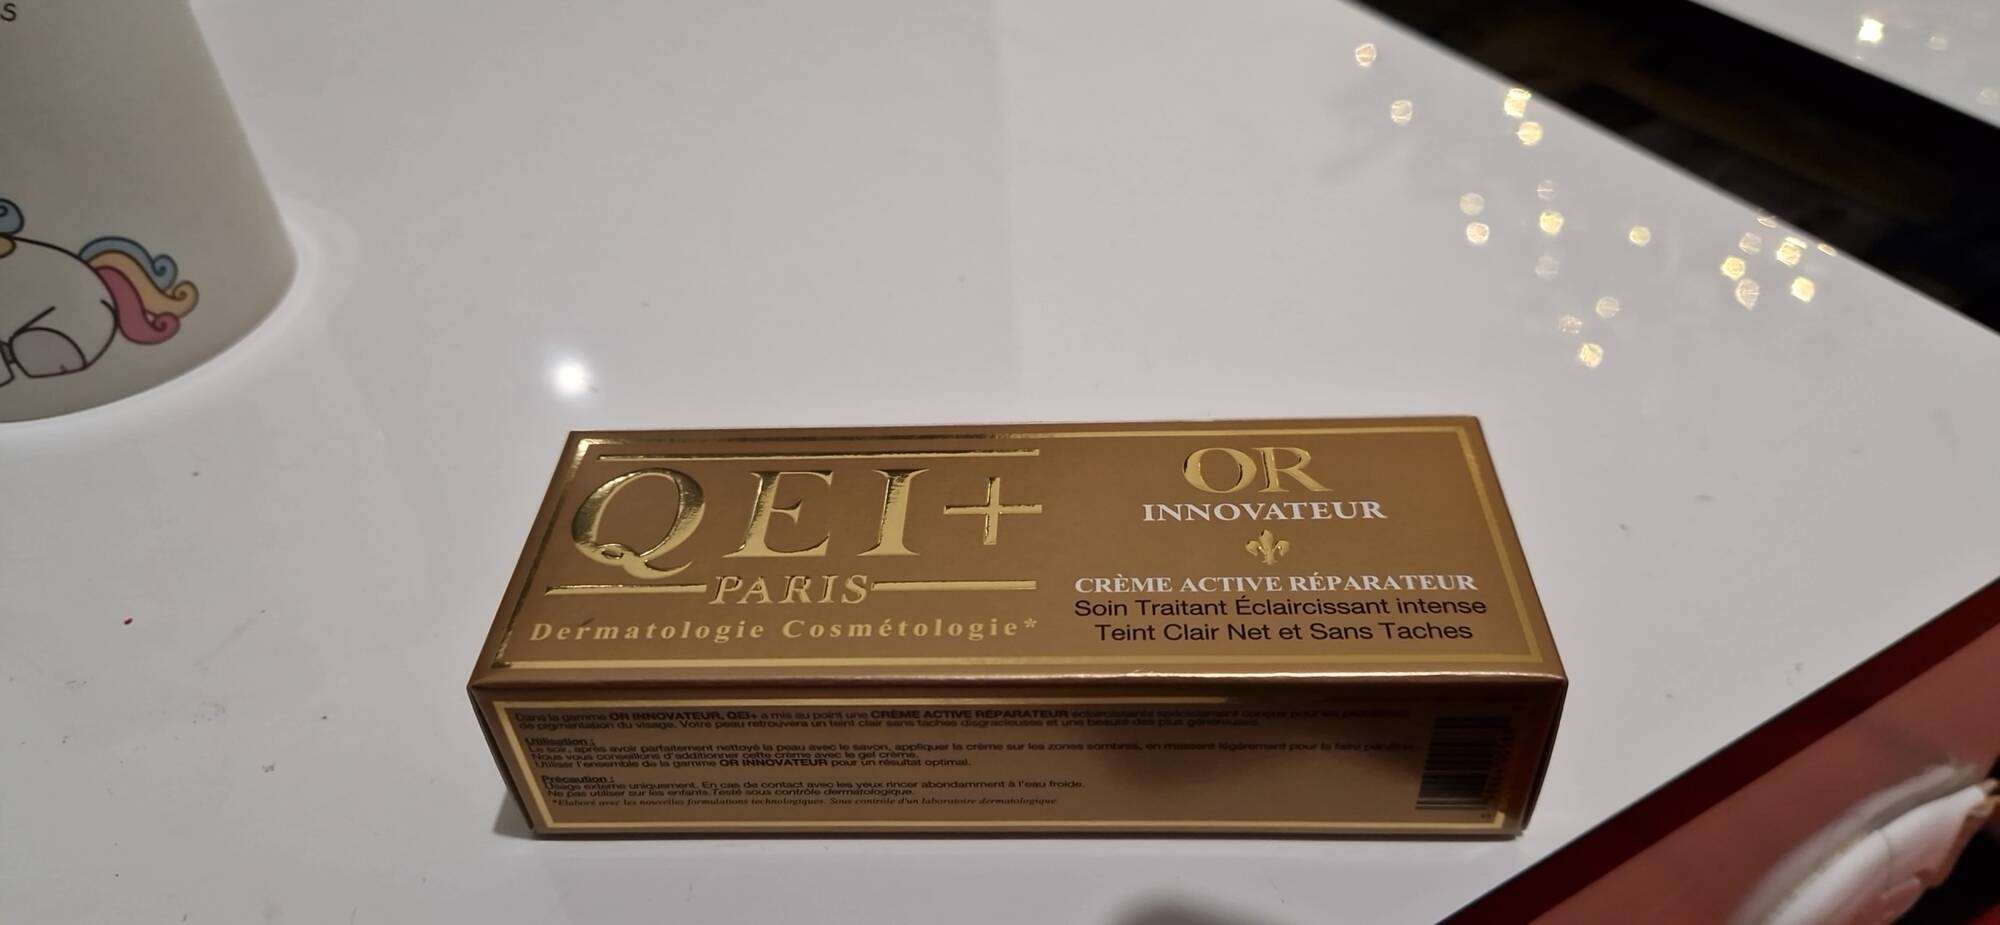 QEI+ PARIS - Or innovateur - Crème active réparateur